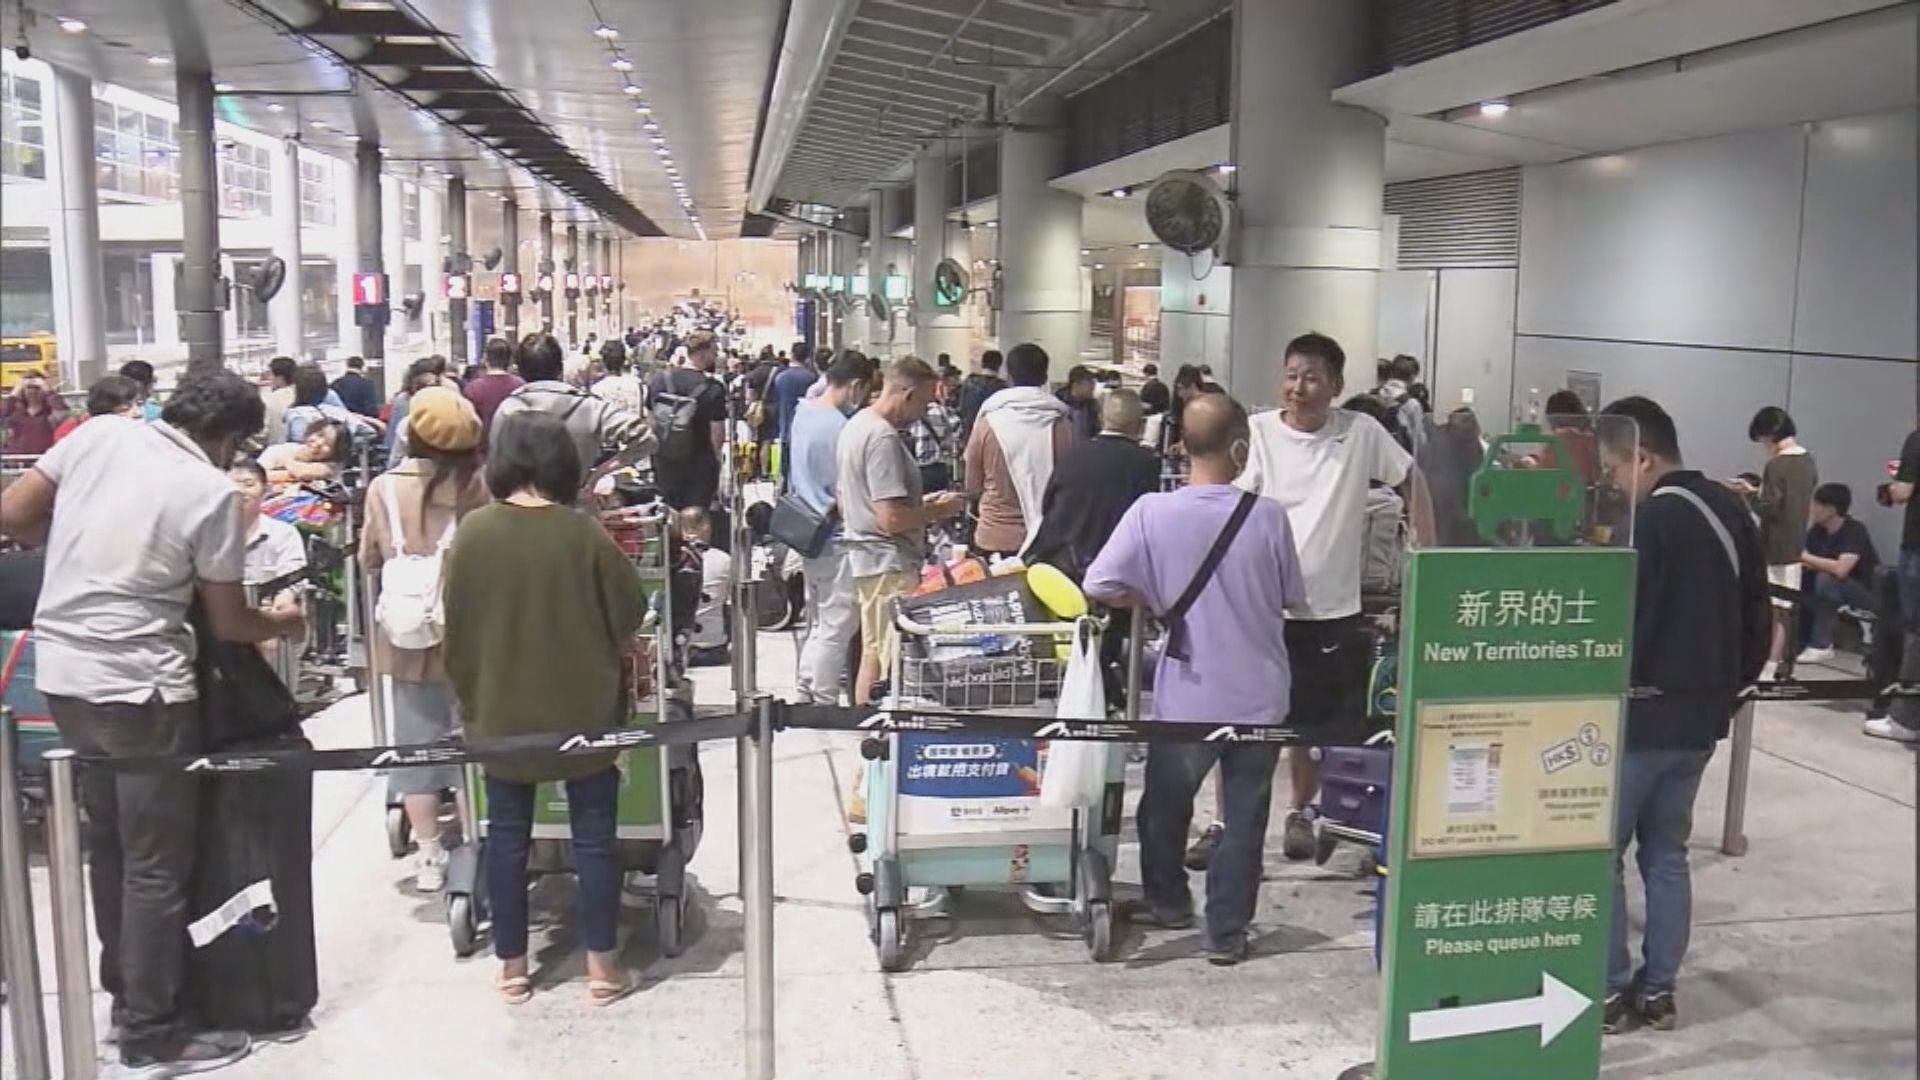 的士業界建議政府設「颱風車隊」接機場客 非專利巴士業界指可安排旅巴